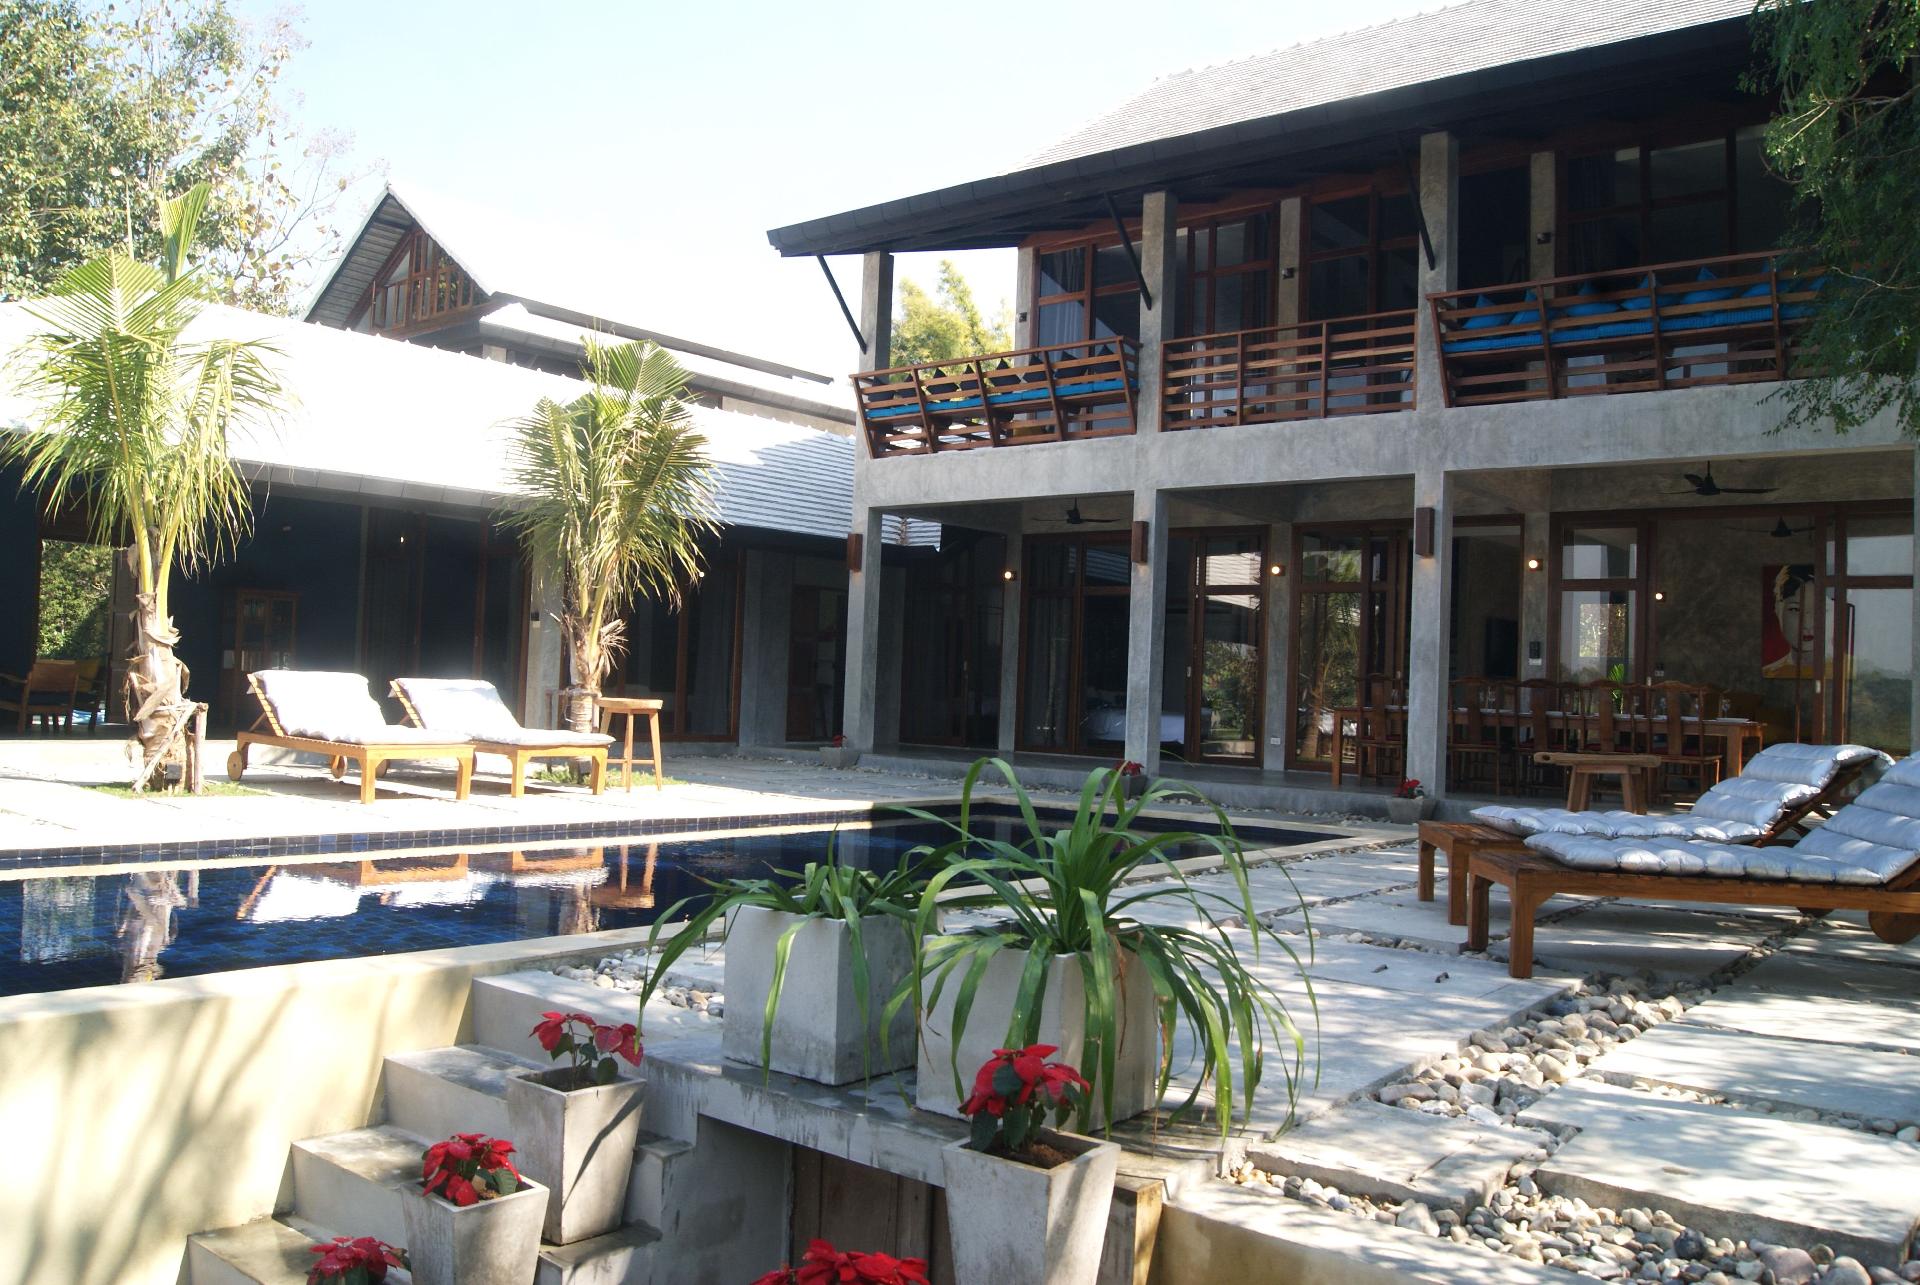 2 Ping Pool Villas - 2 atemberaubend gestaltete Vi Ferienhaus in Asien und Naher Osten